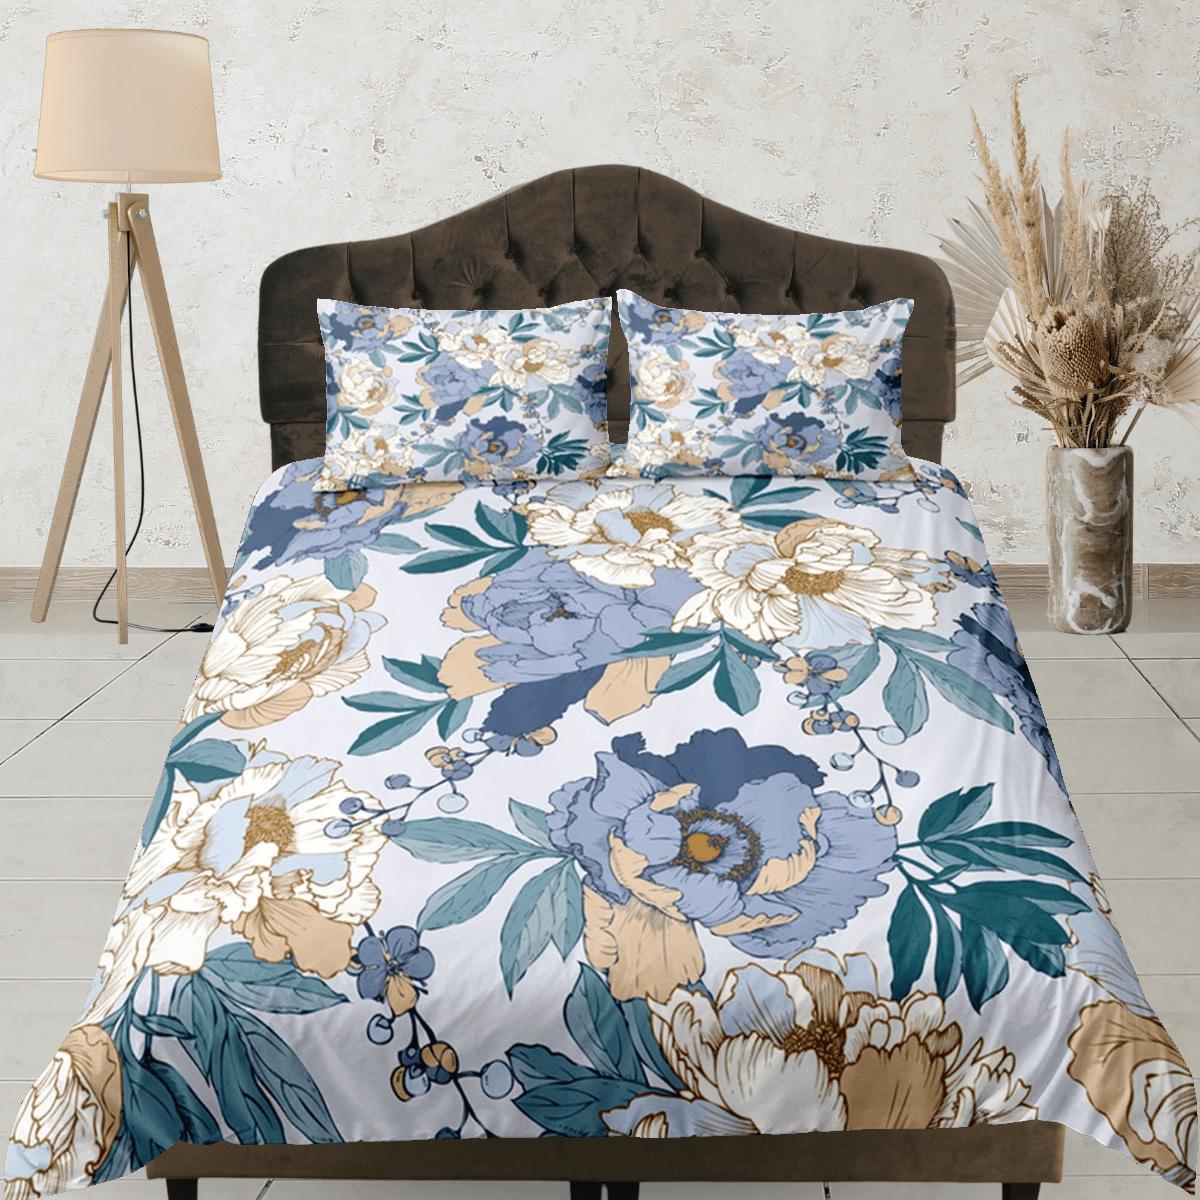 daintyduvet Peony Blue Duvet Cover Set, Floral Bedspread Dorm Bedding Set Single Bedding